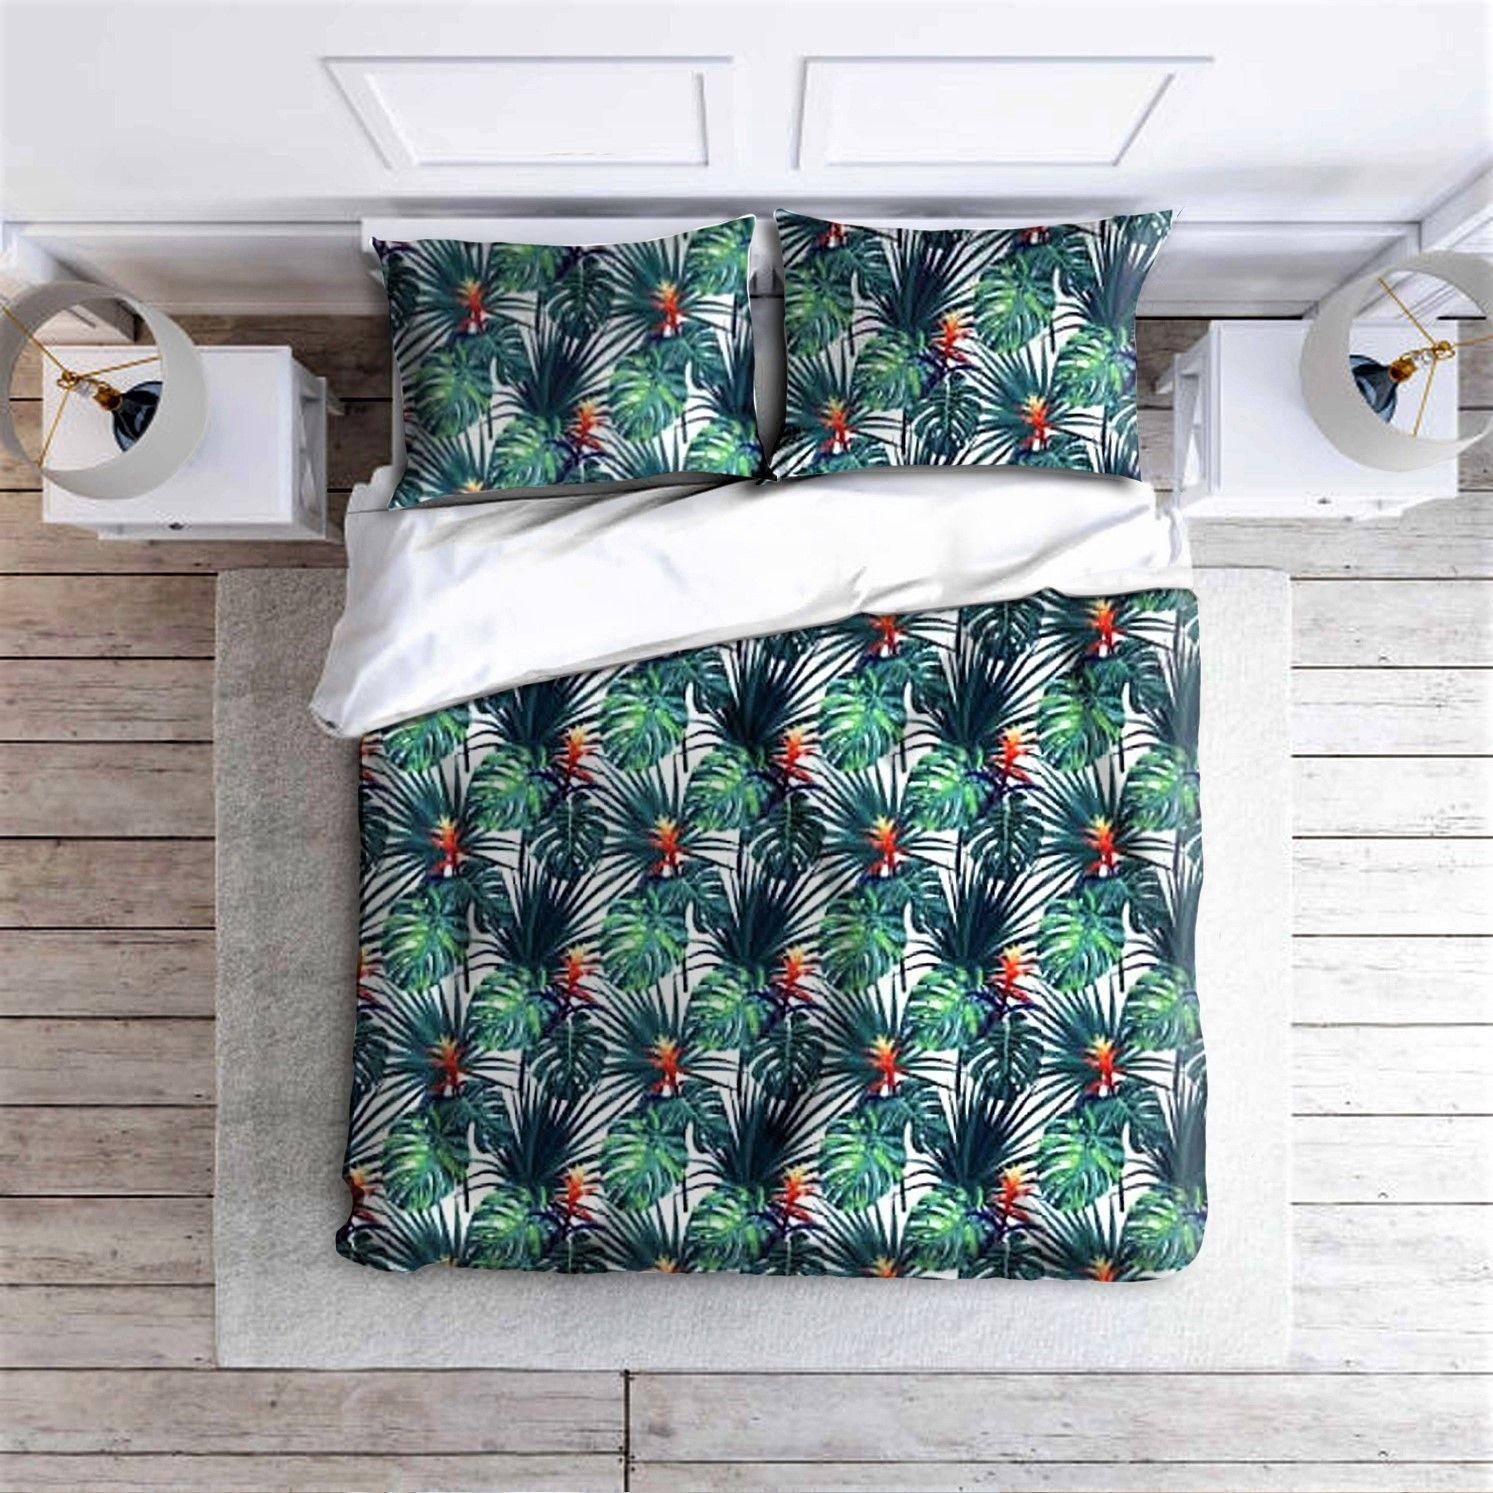 Cotton bed linen set 160x200 cm - jungle